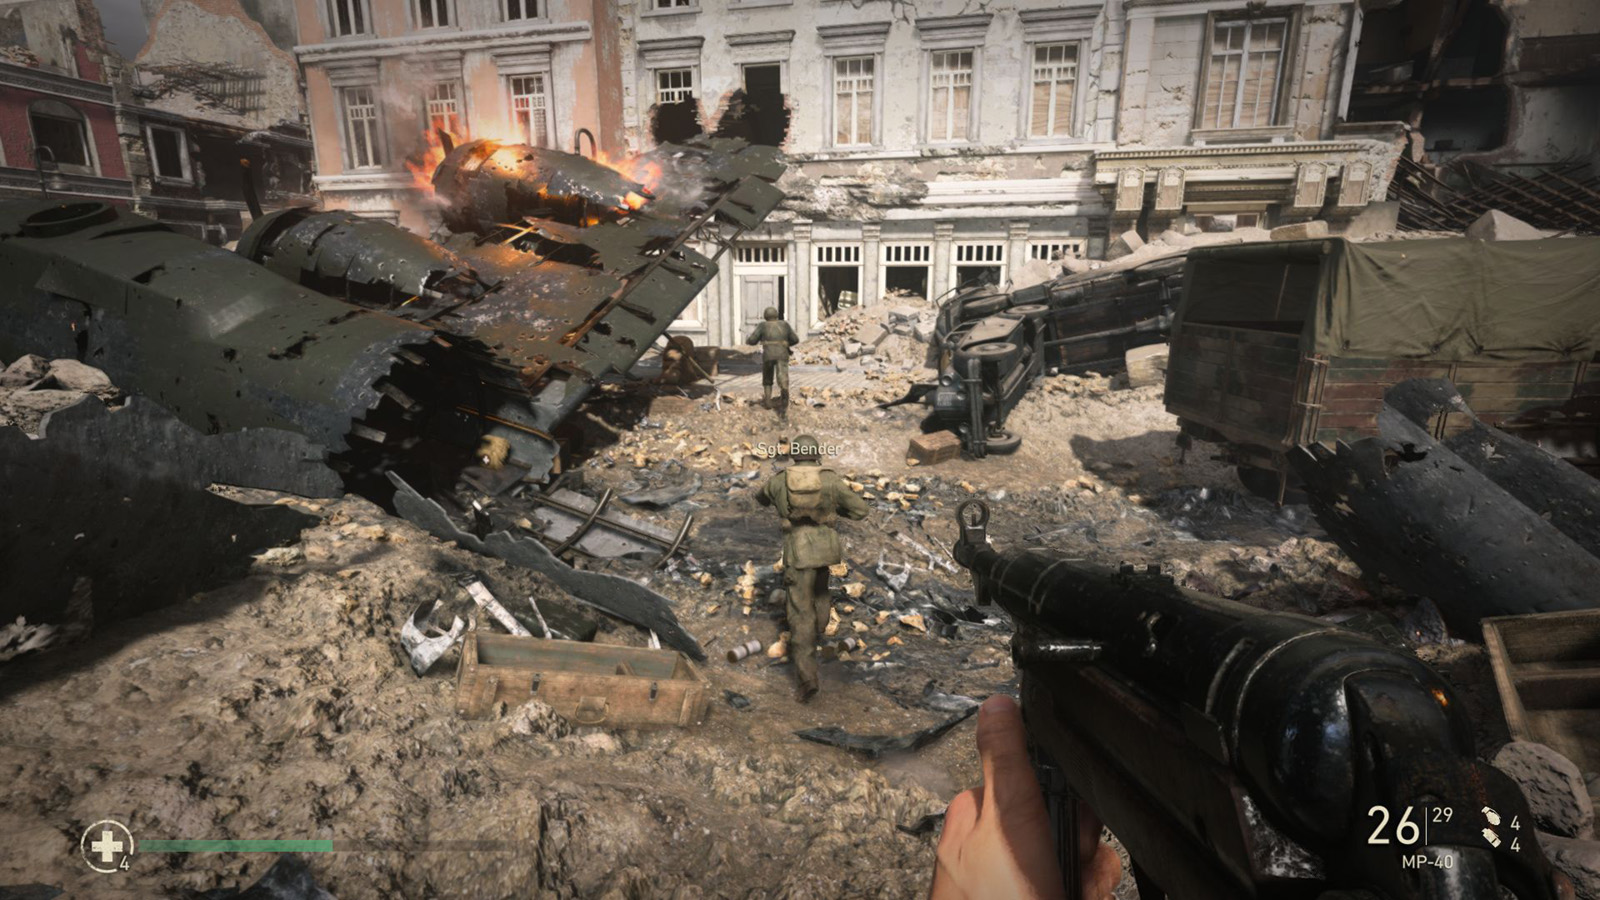 Call of Duty: WWII' leva série de volta à 2ª Guerra Mundial sem perder  intensidade; G1 jogou, E3 2017